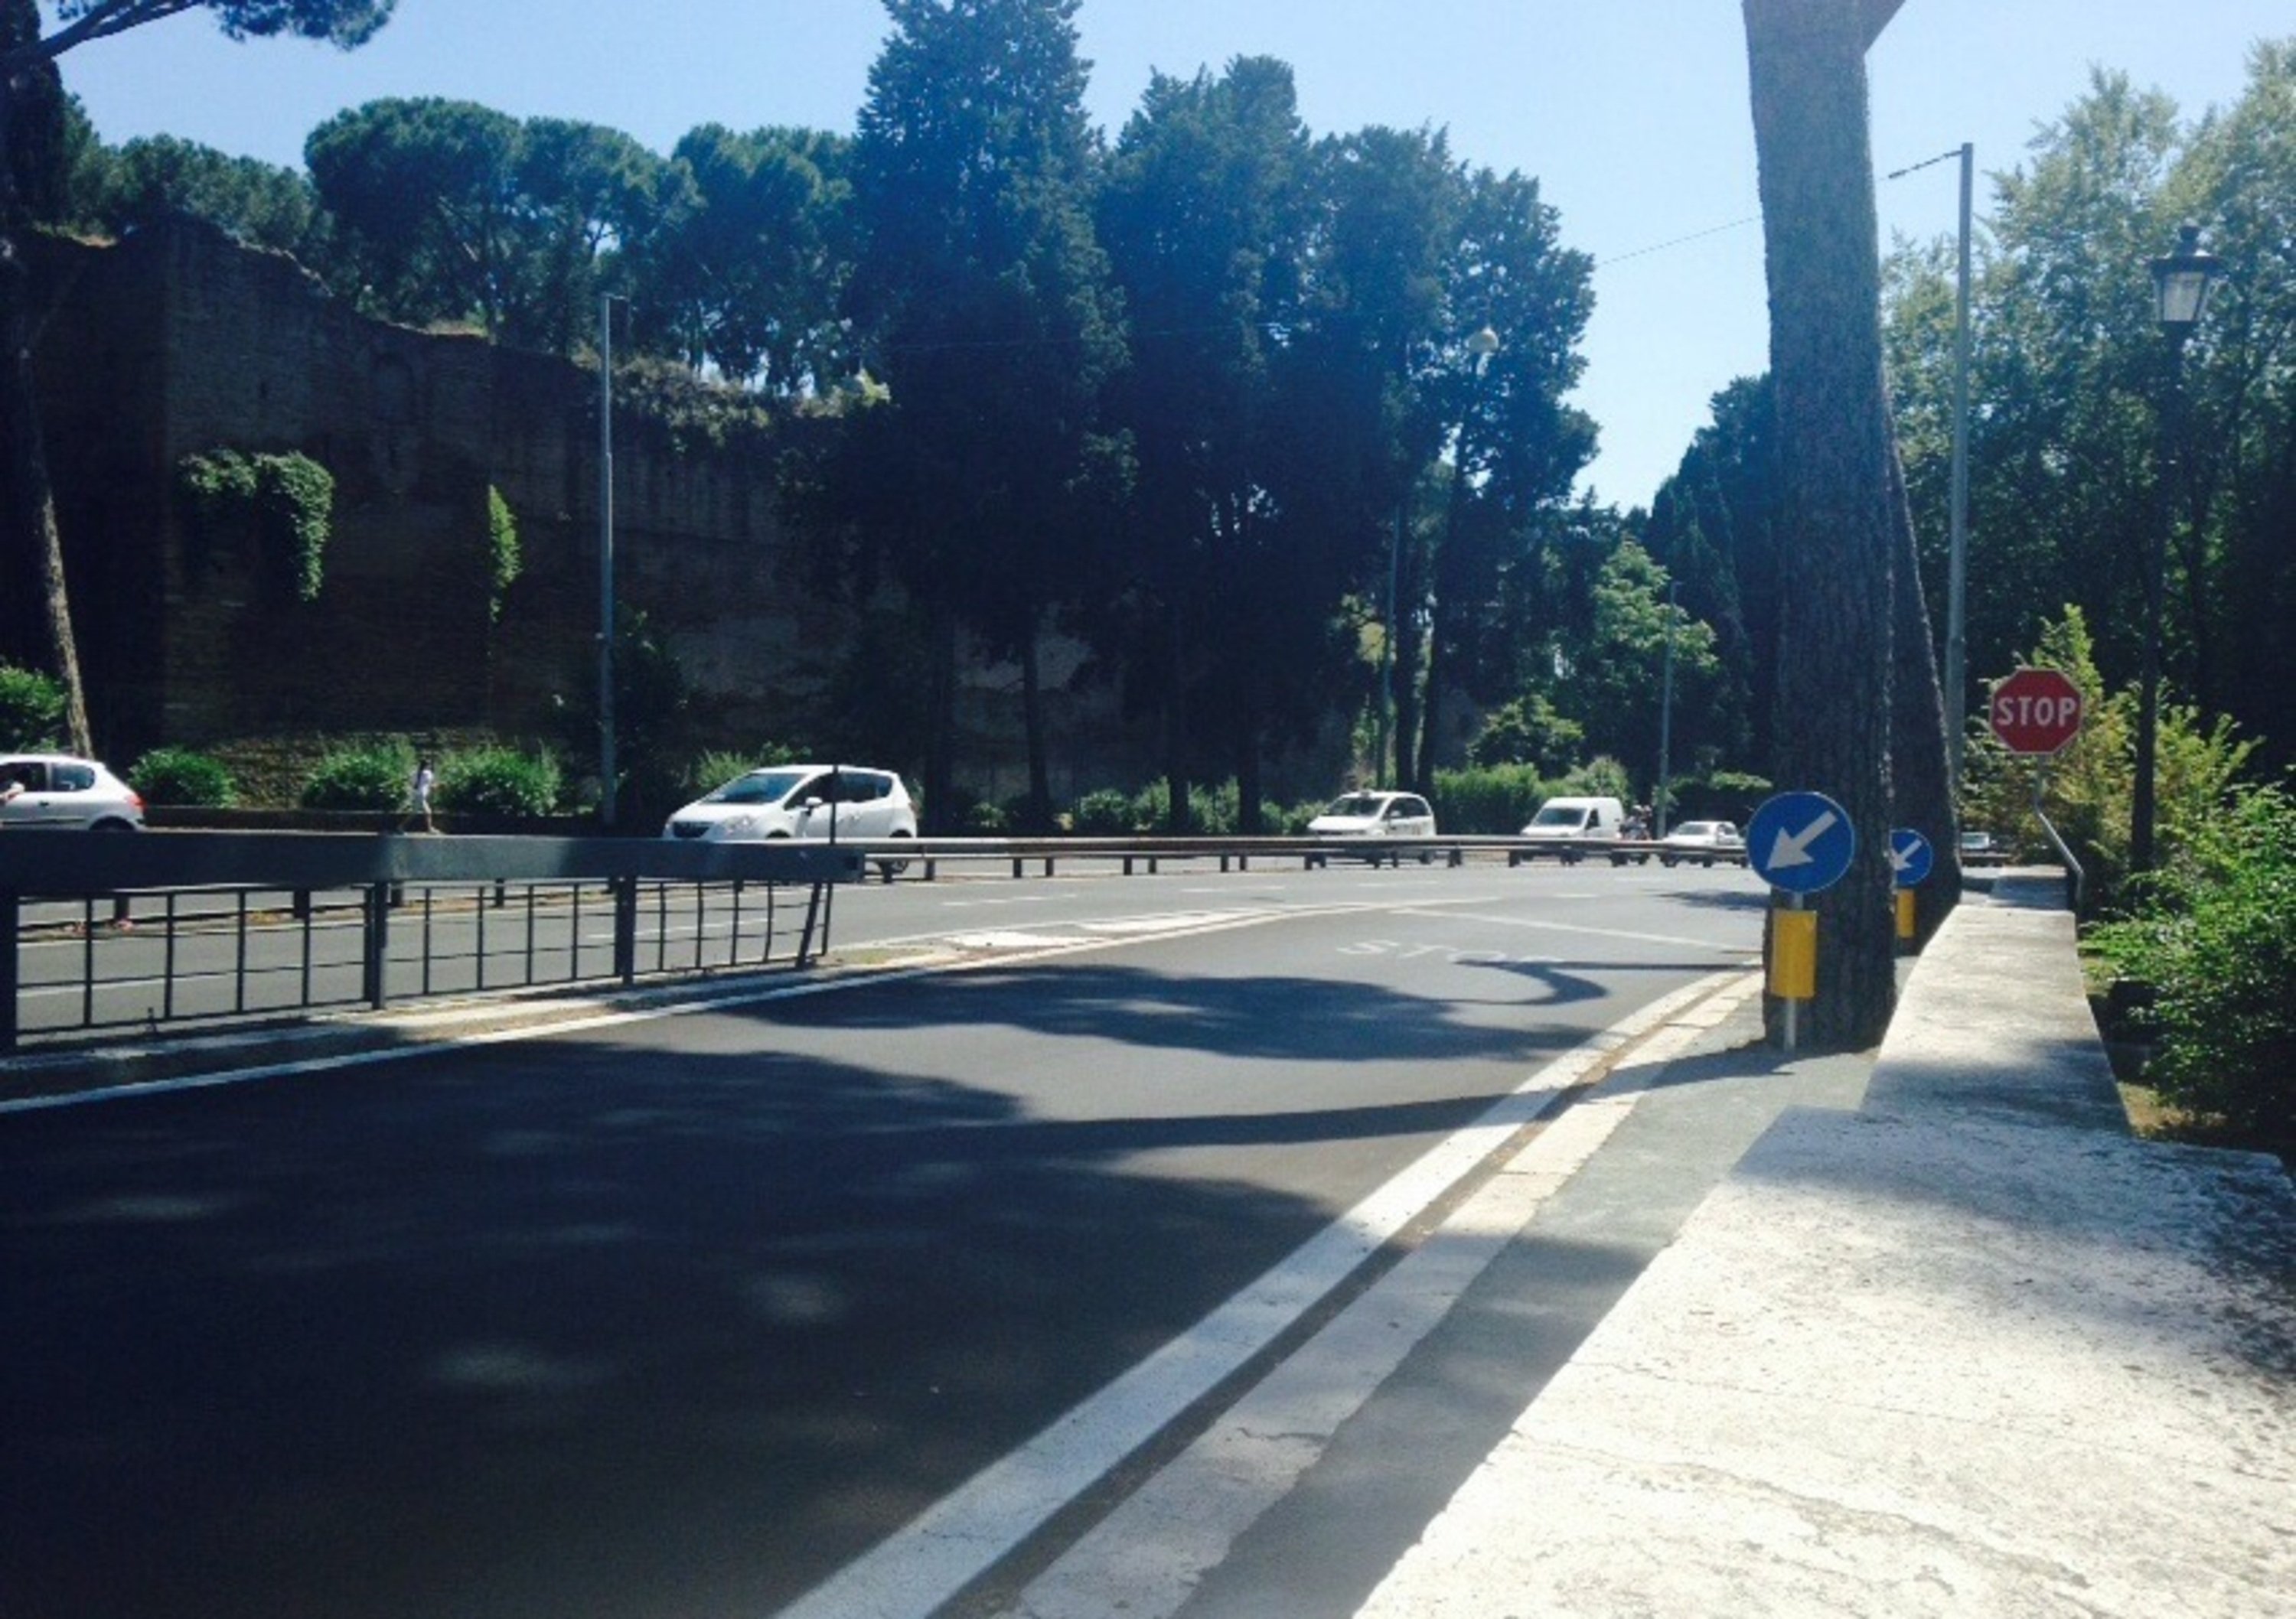 Roma: il Muro Torto sicuro anche per le due ruote